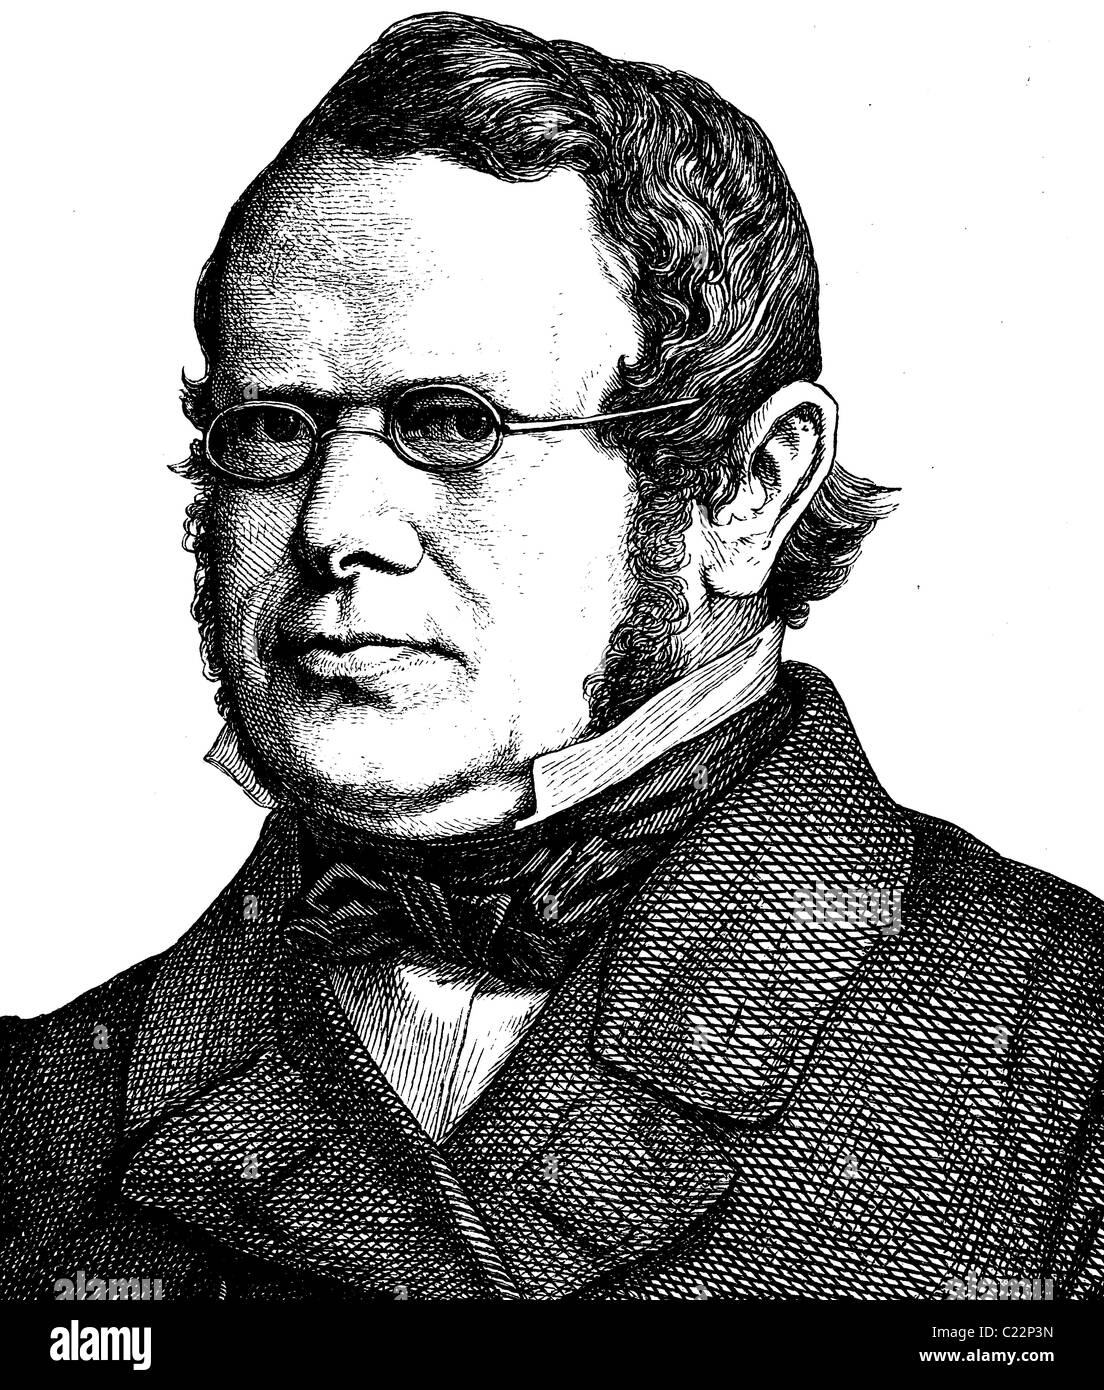 L'amélioration de l'image numérique de Ludwig Haeusser, 1818 - 1867, l'historien et homme politique, portrait, illustration historique, 1880 Banque D'Images